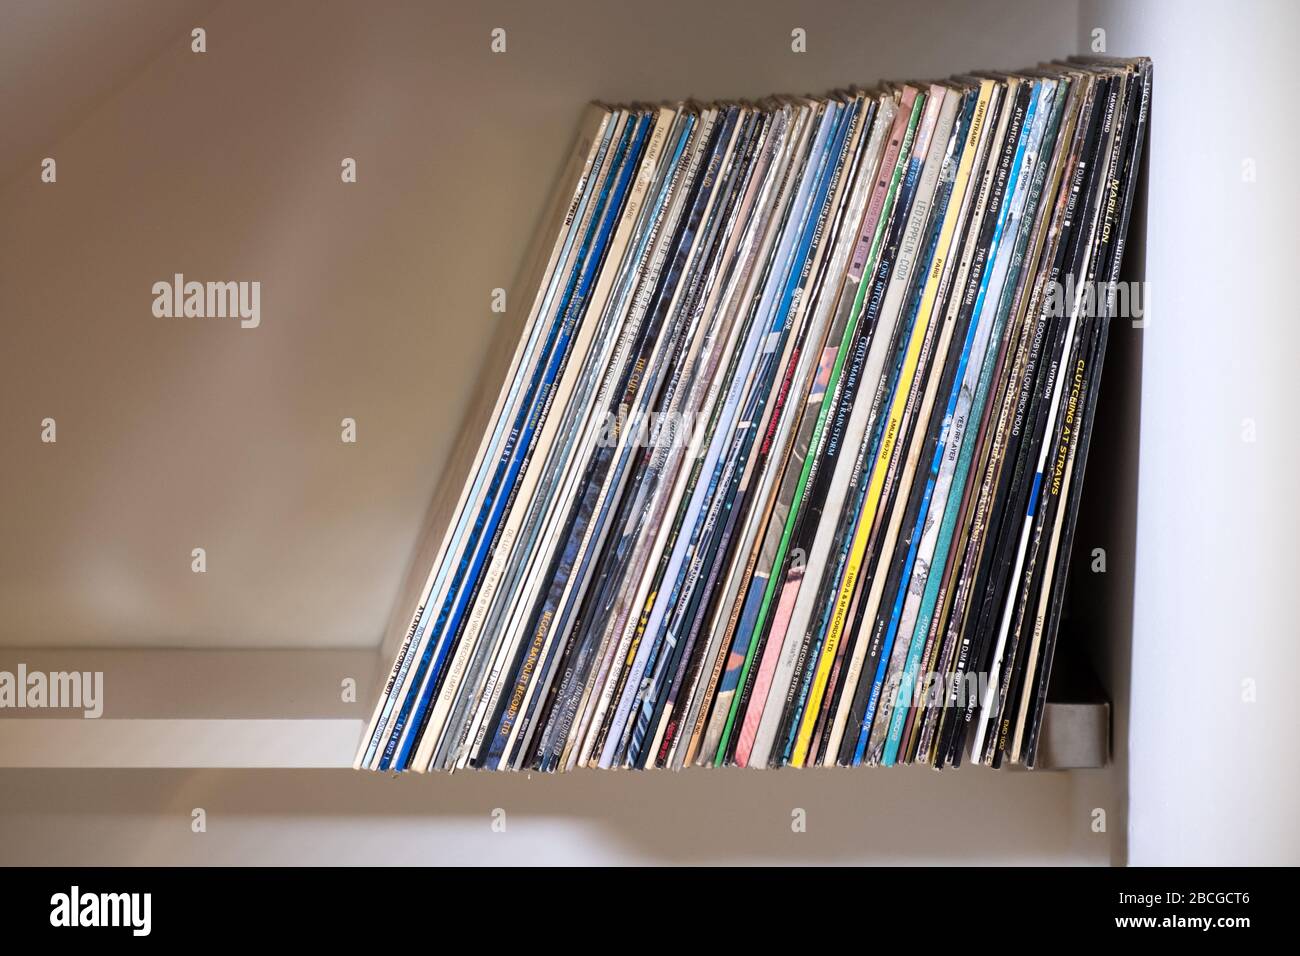 Une rangée d'albums d'enregistrement, ou de LP vinyle, stockés, debout, sur une étagère Banque D'Images